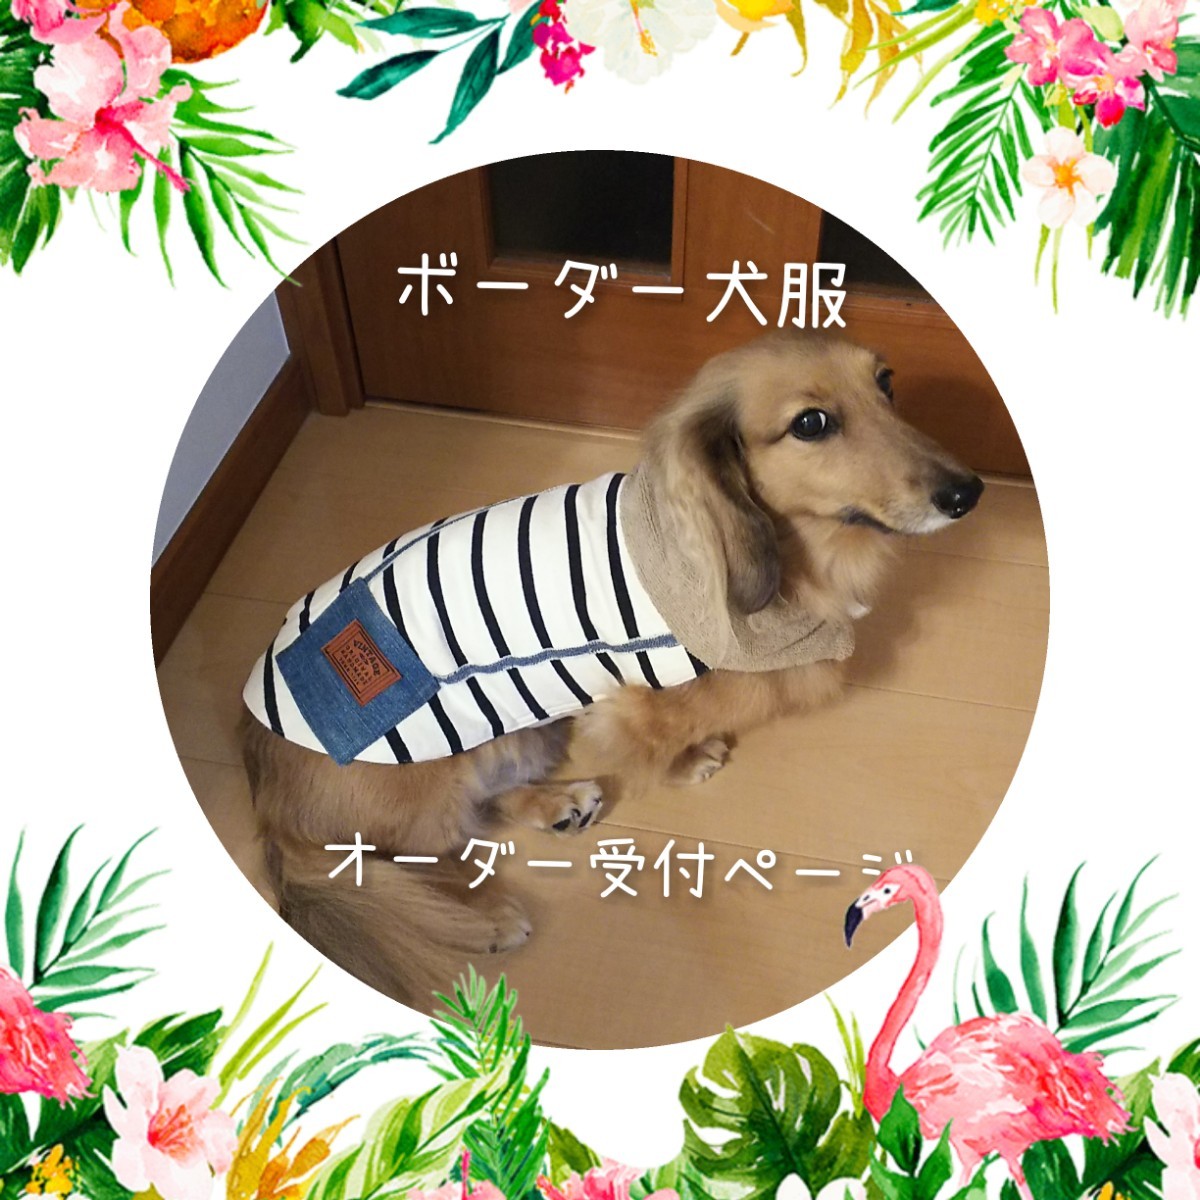 【大放出セール】ペット用品ボーダー犬服ハンドメイドオーダー受付ページ - ruizvillandiego.com